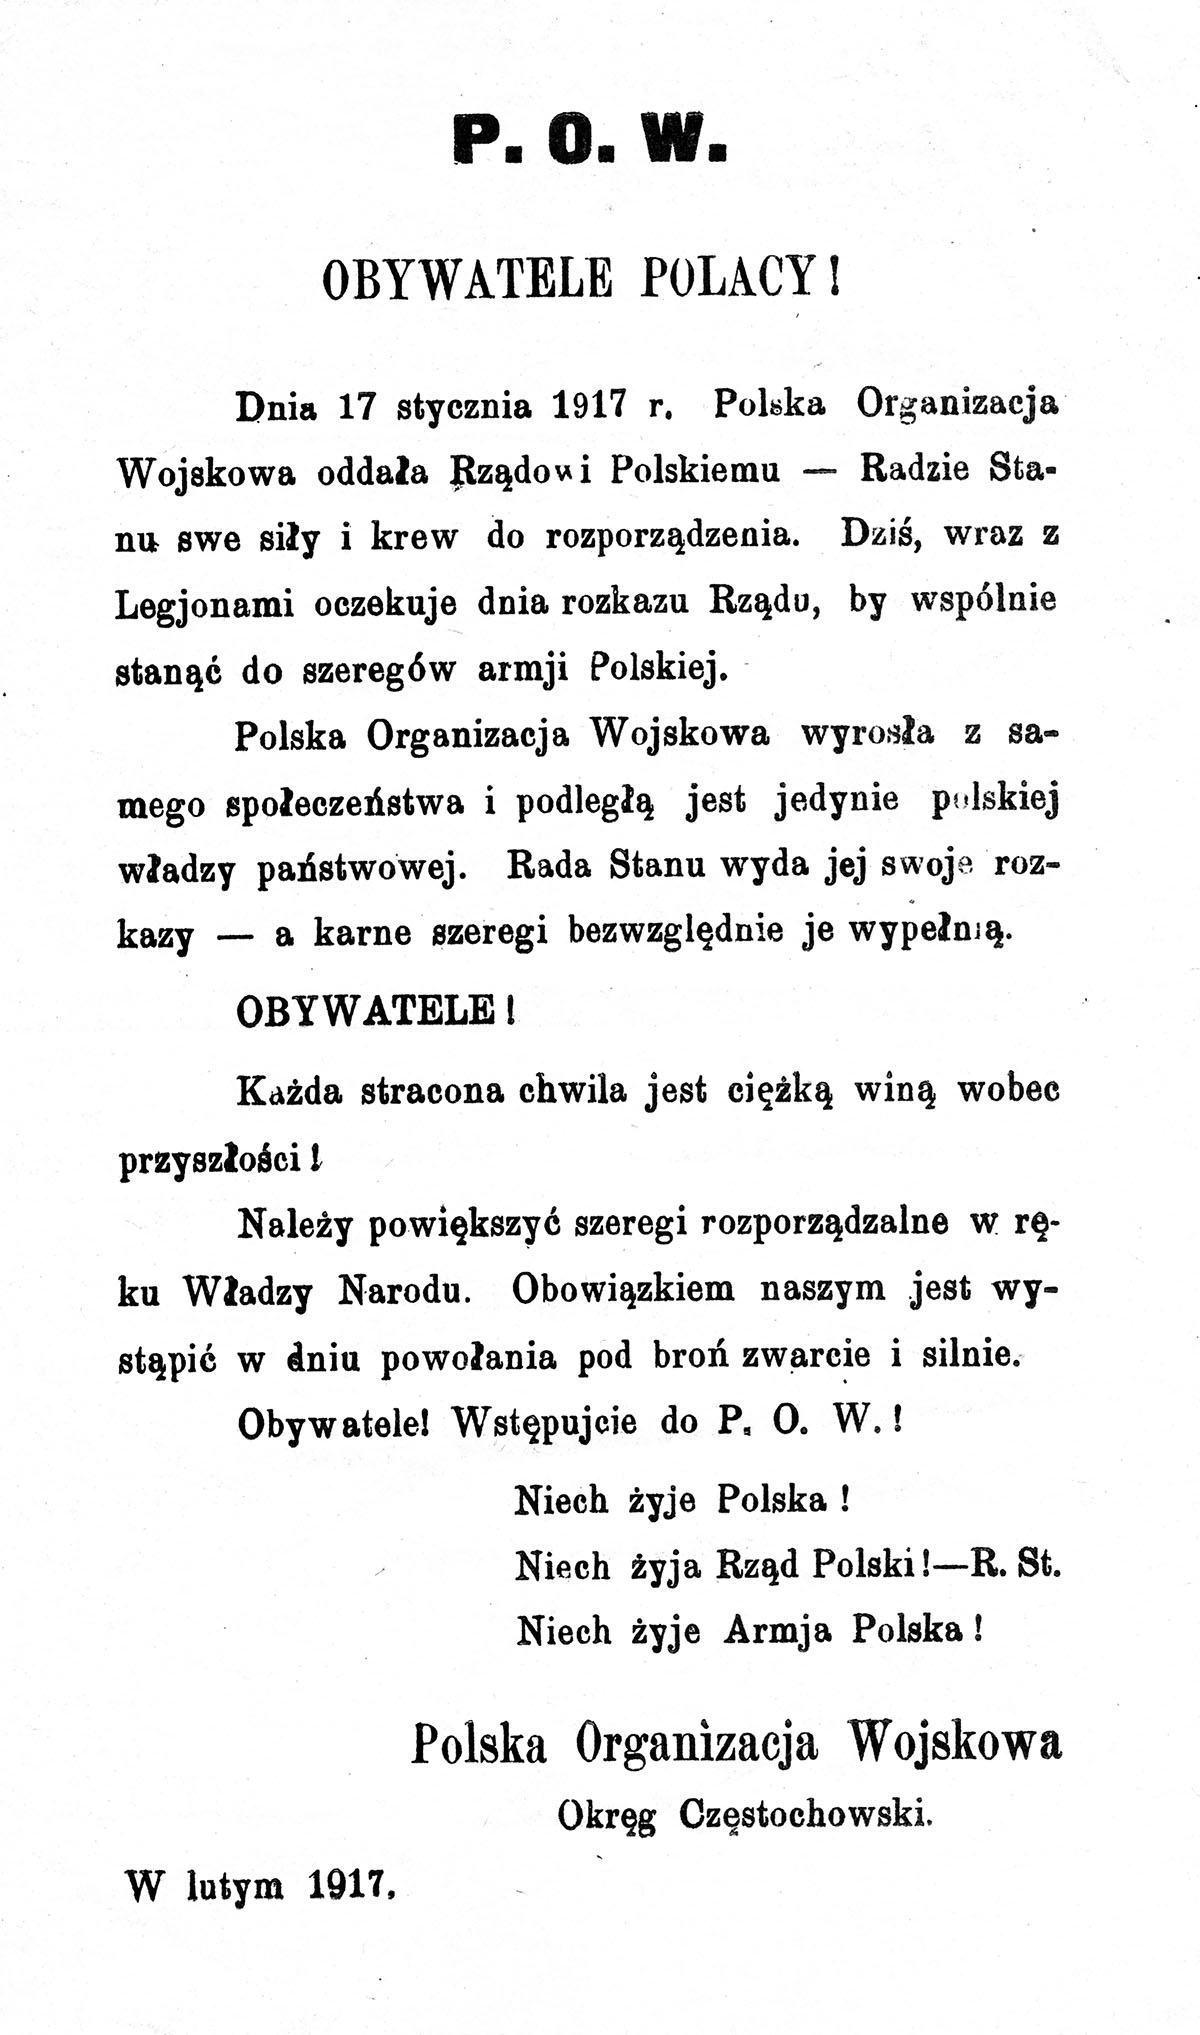 Odezwa częstochowskiej POW, 1917 r. Źródło: Śląska Biblioteka Cyfrowa